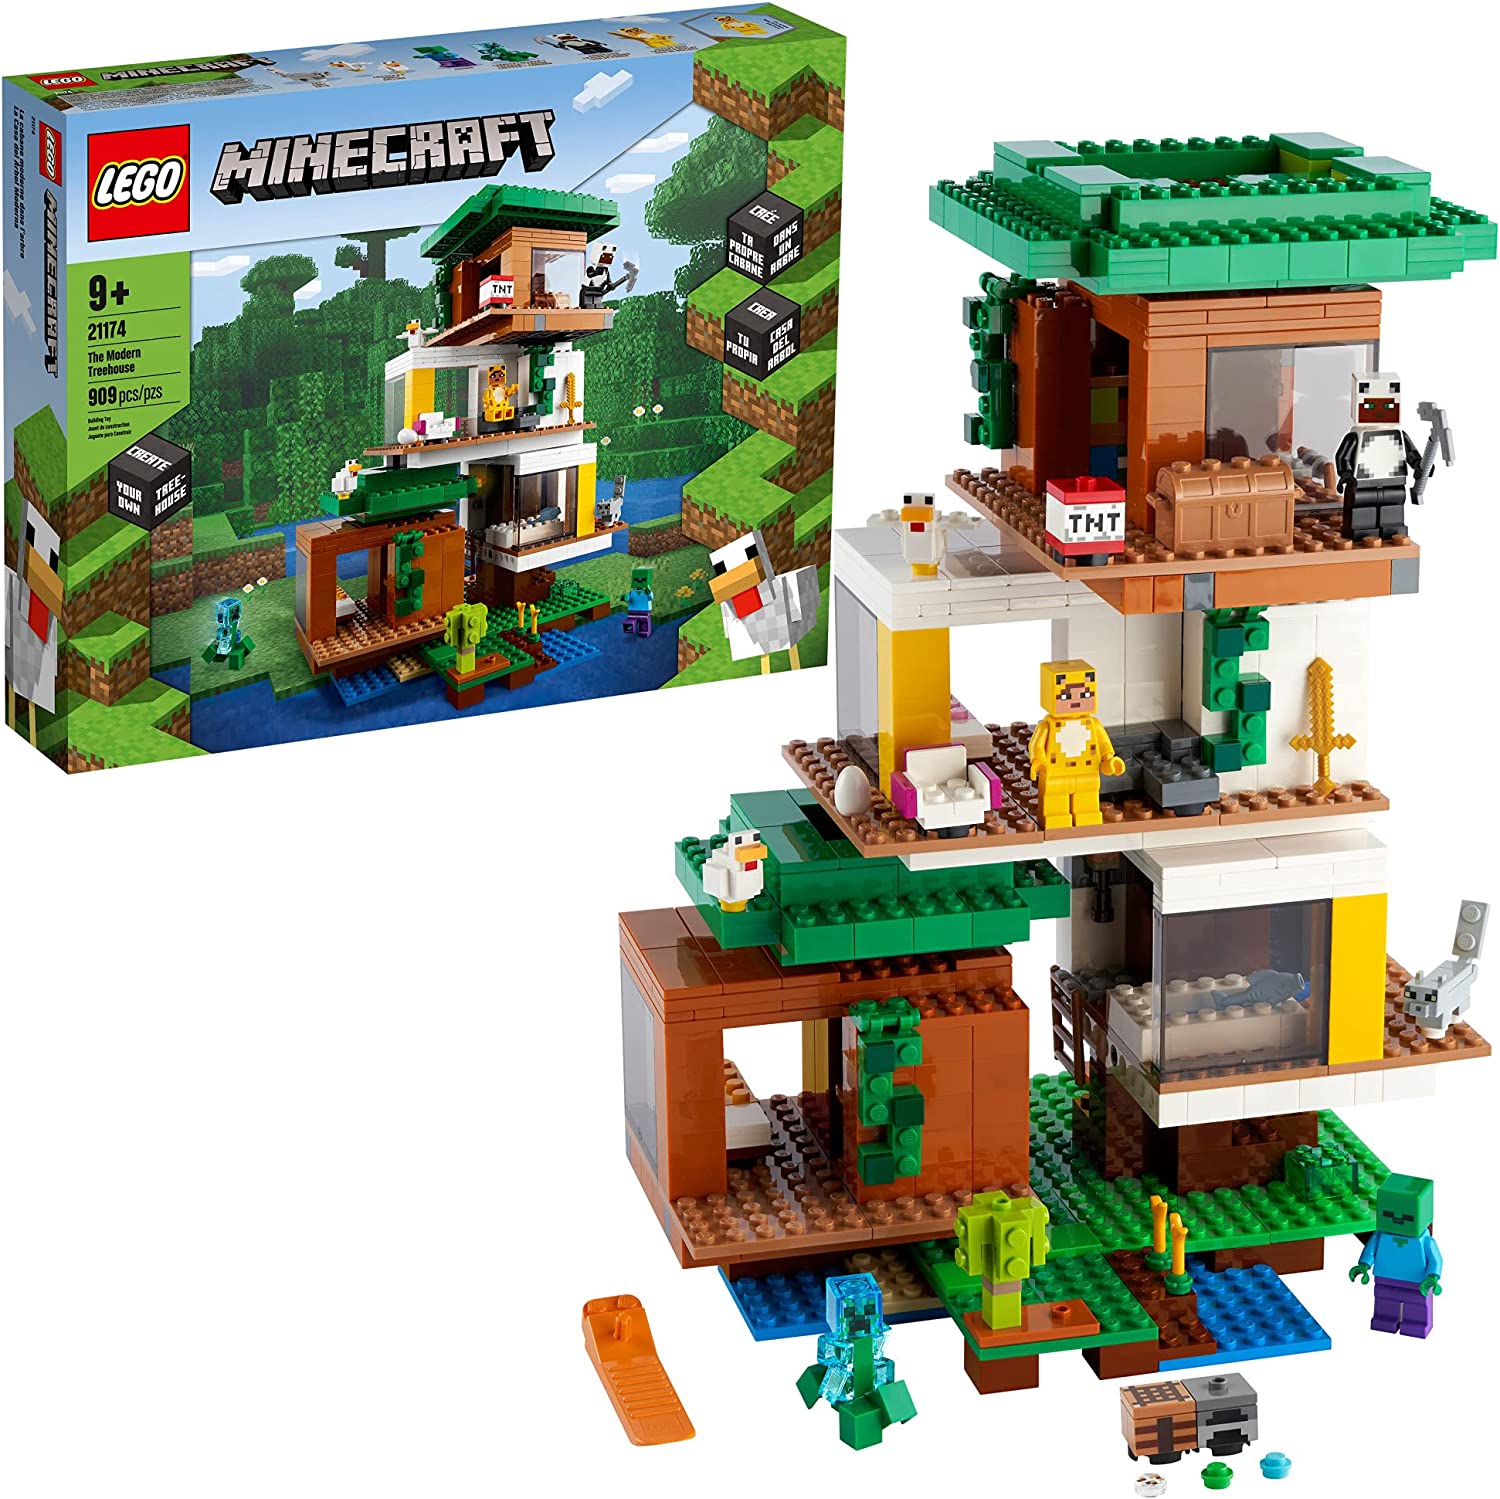 Mới LEGO Minecraft Ngôi nhà trên cây hiện đại 21174 Bộ đồ chơi Bộ đồ chơi  xây dựng ngôi nhà trên cây khổng lồ; Đồ chơi thú vị cho trẻ em Minecraft-Trò